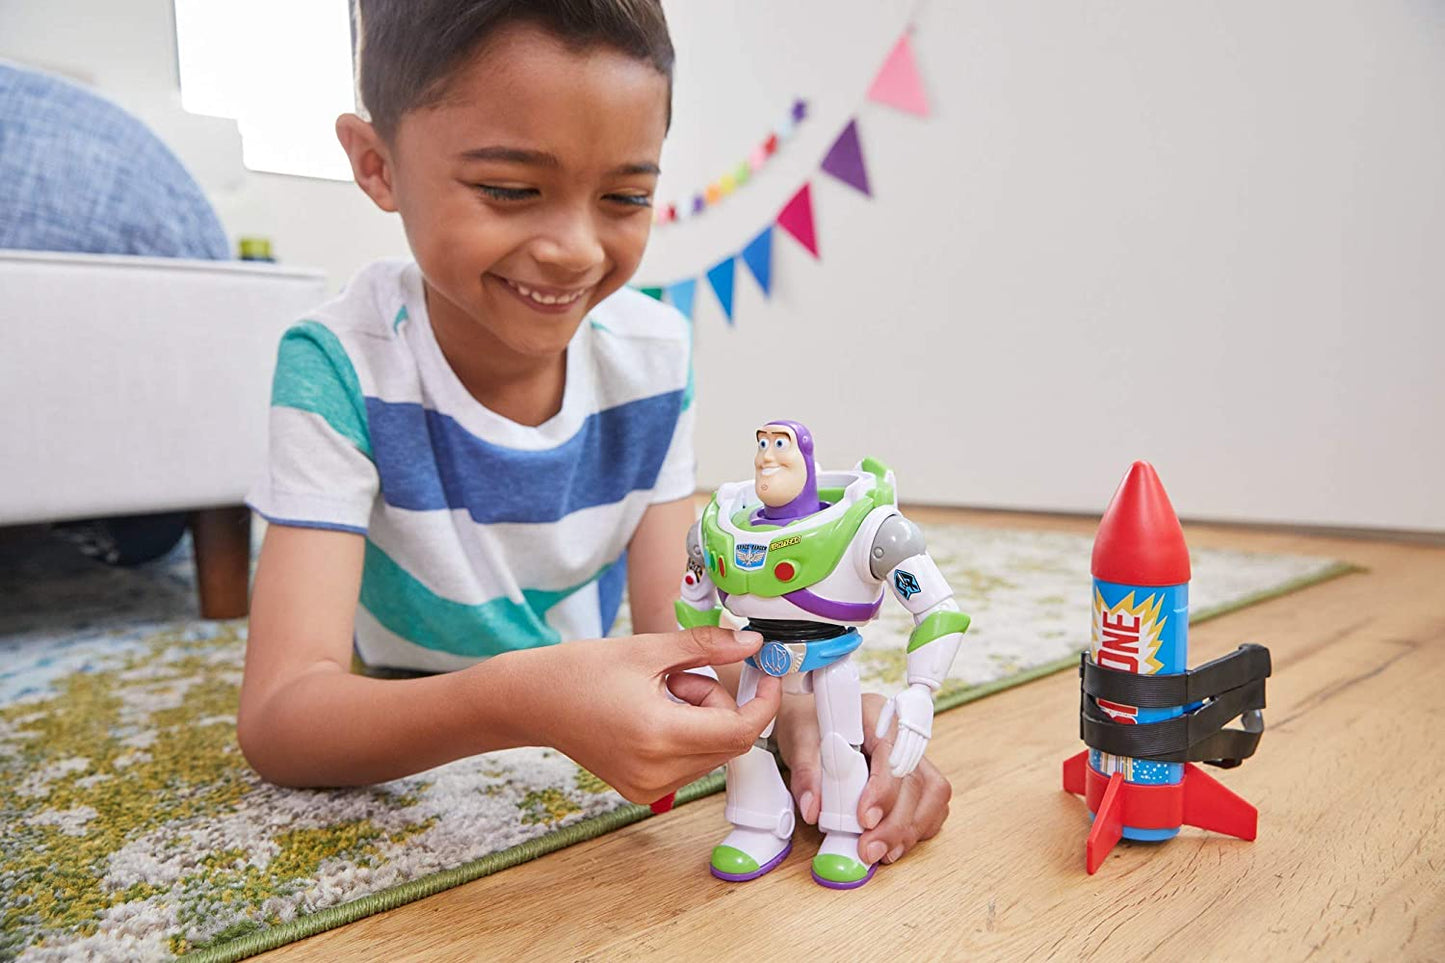 Figura Toy Story Buzz Lightyear con Cohete Escenas Iconicas Original Pixar Matel